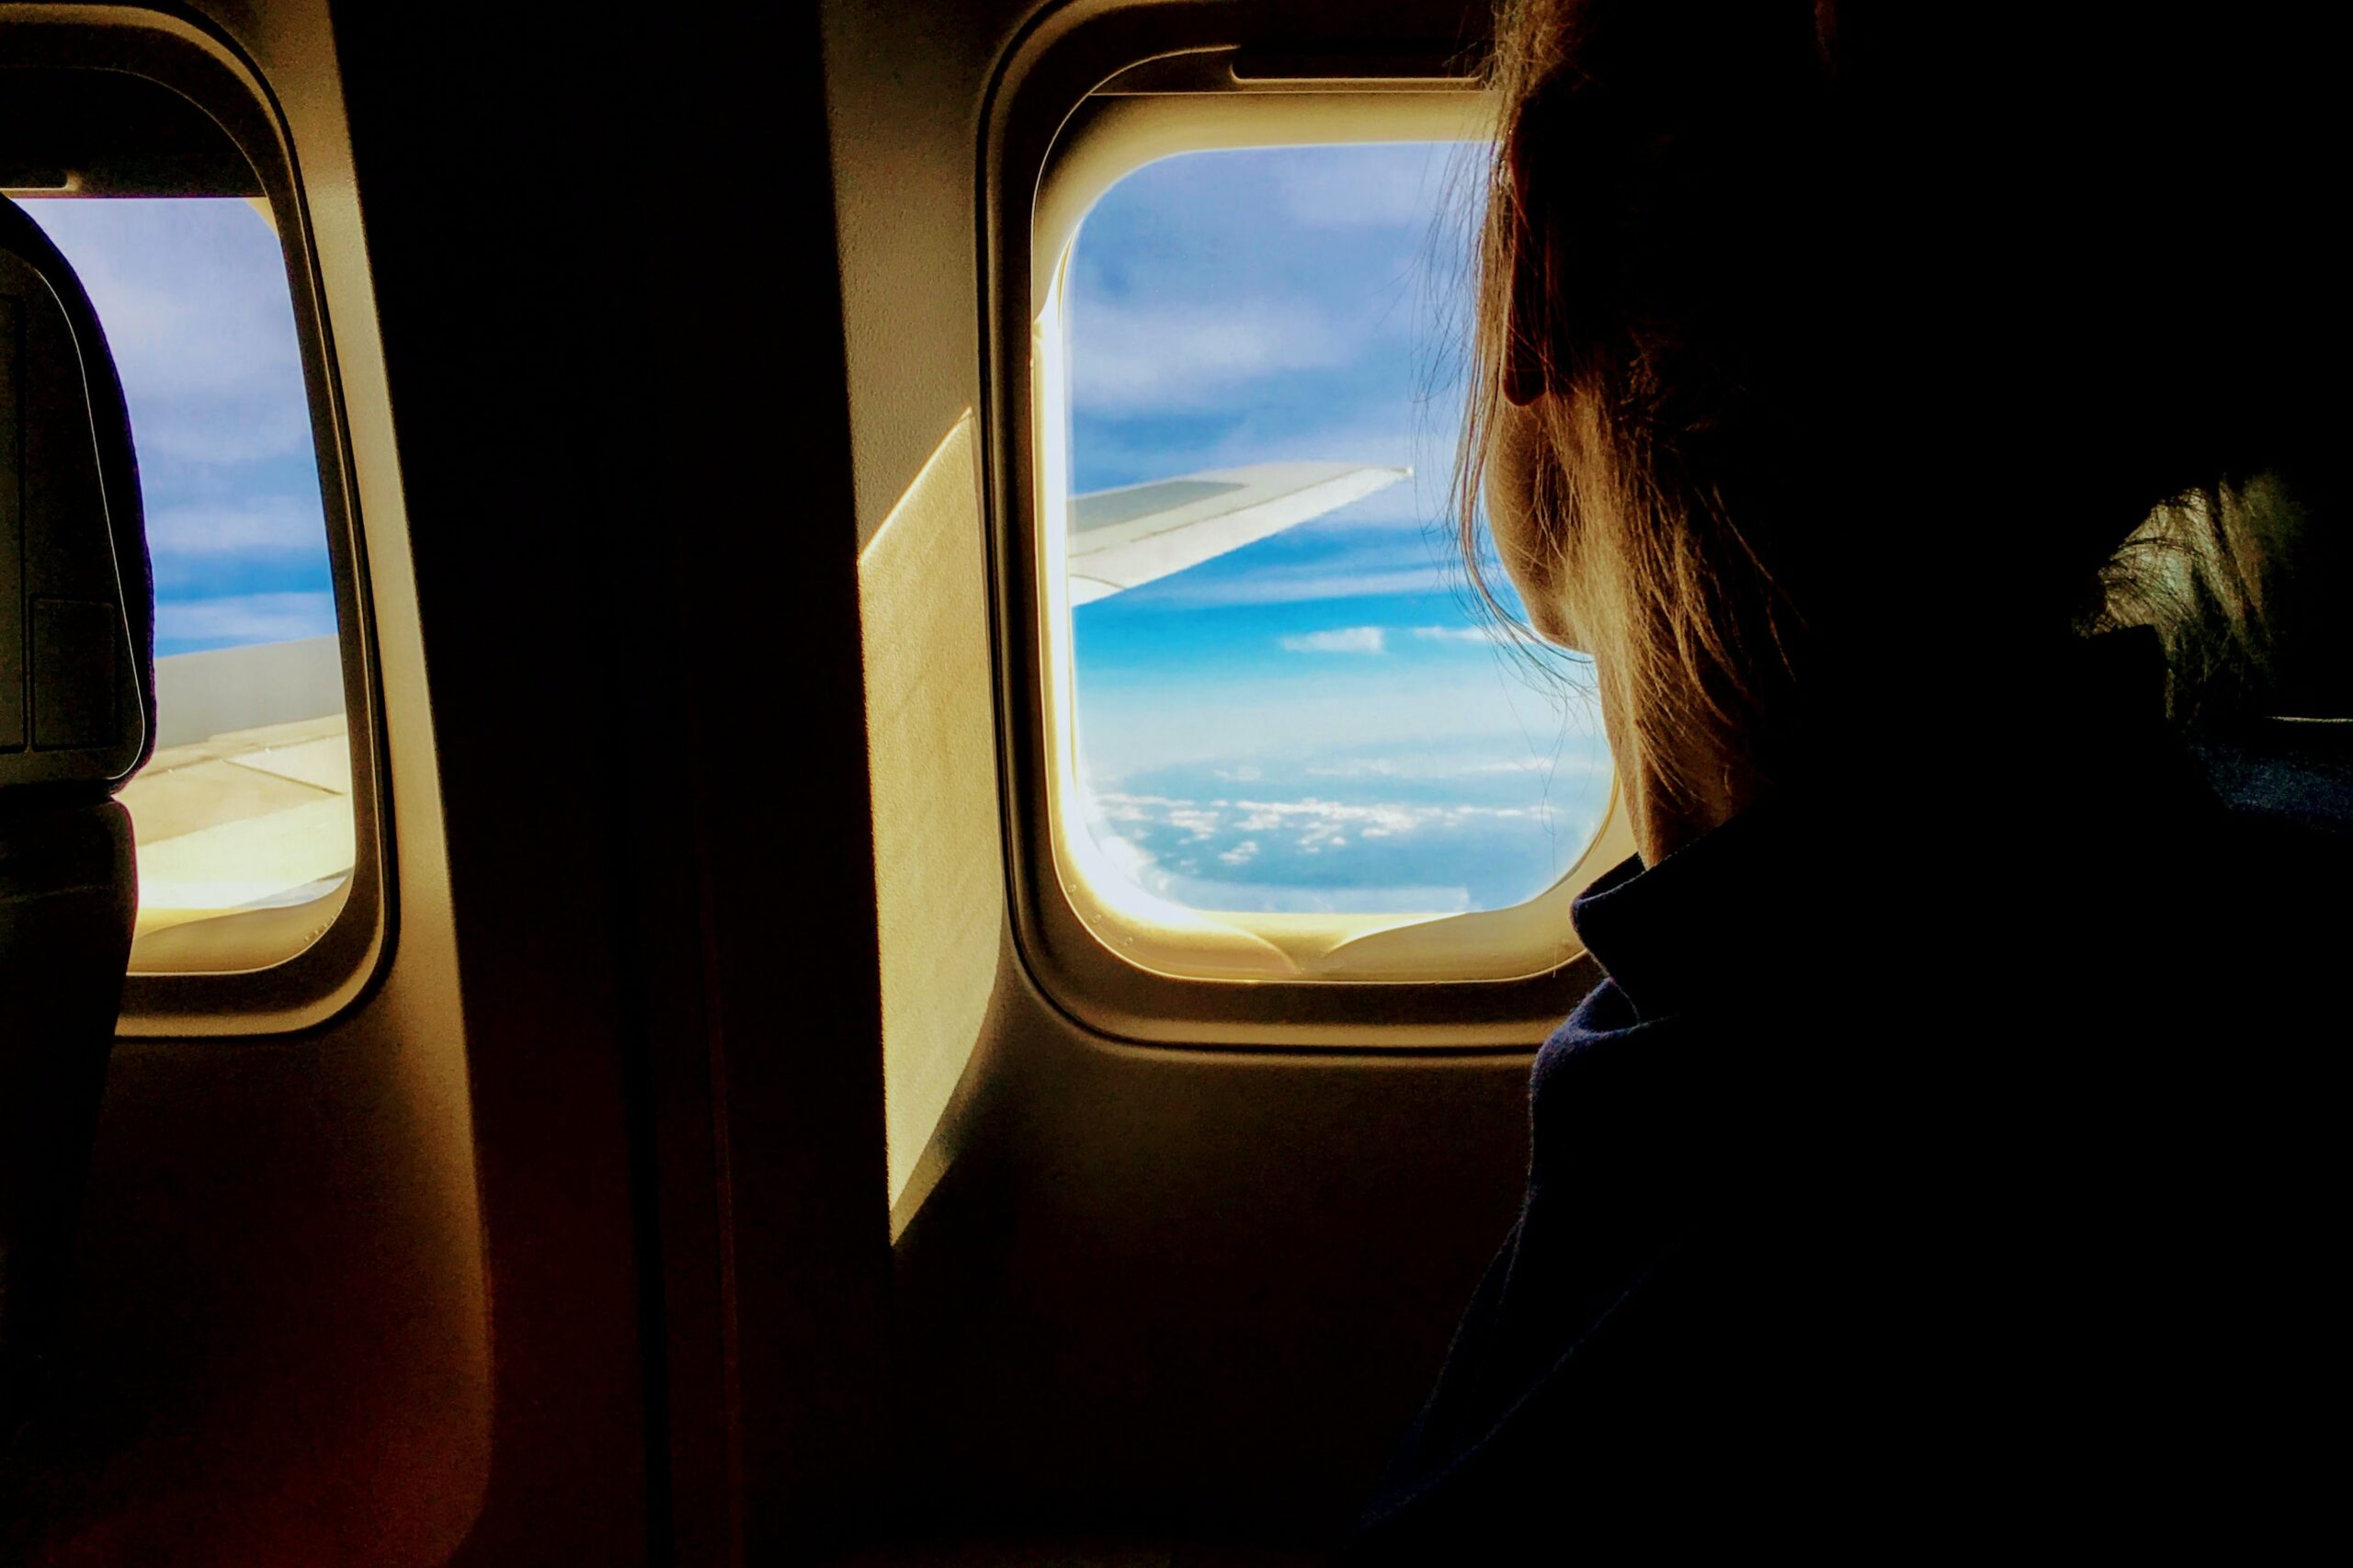 Viagens na pandemia: garota sentada no avião observa o céu pela janela quadrada.